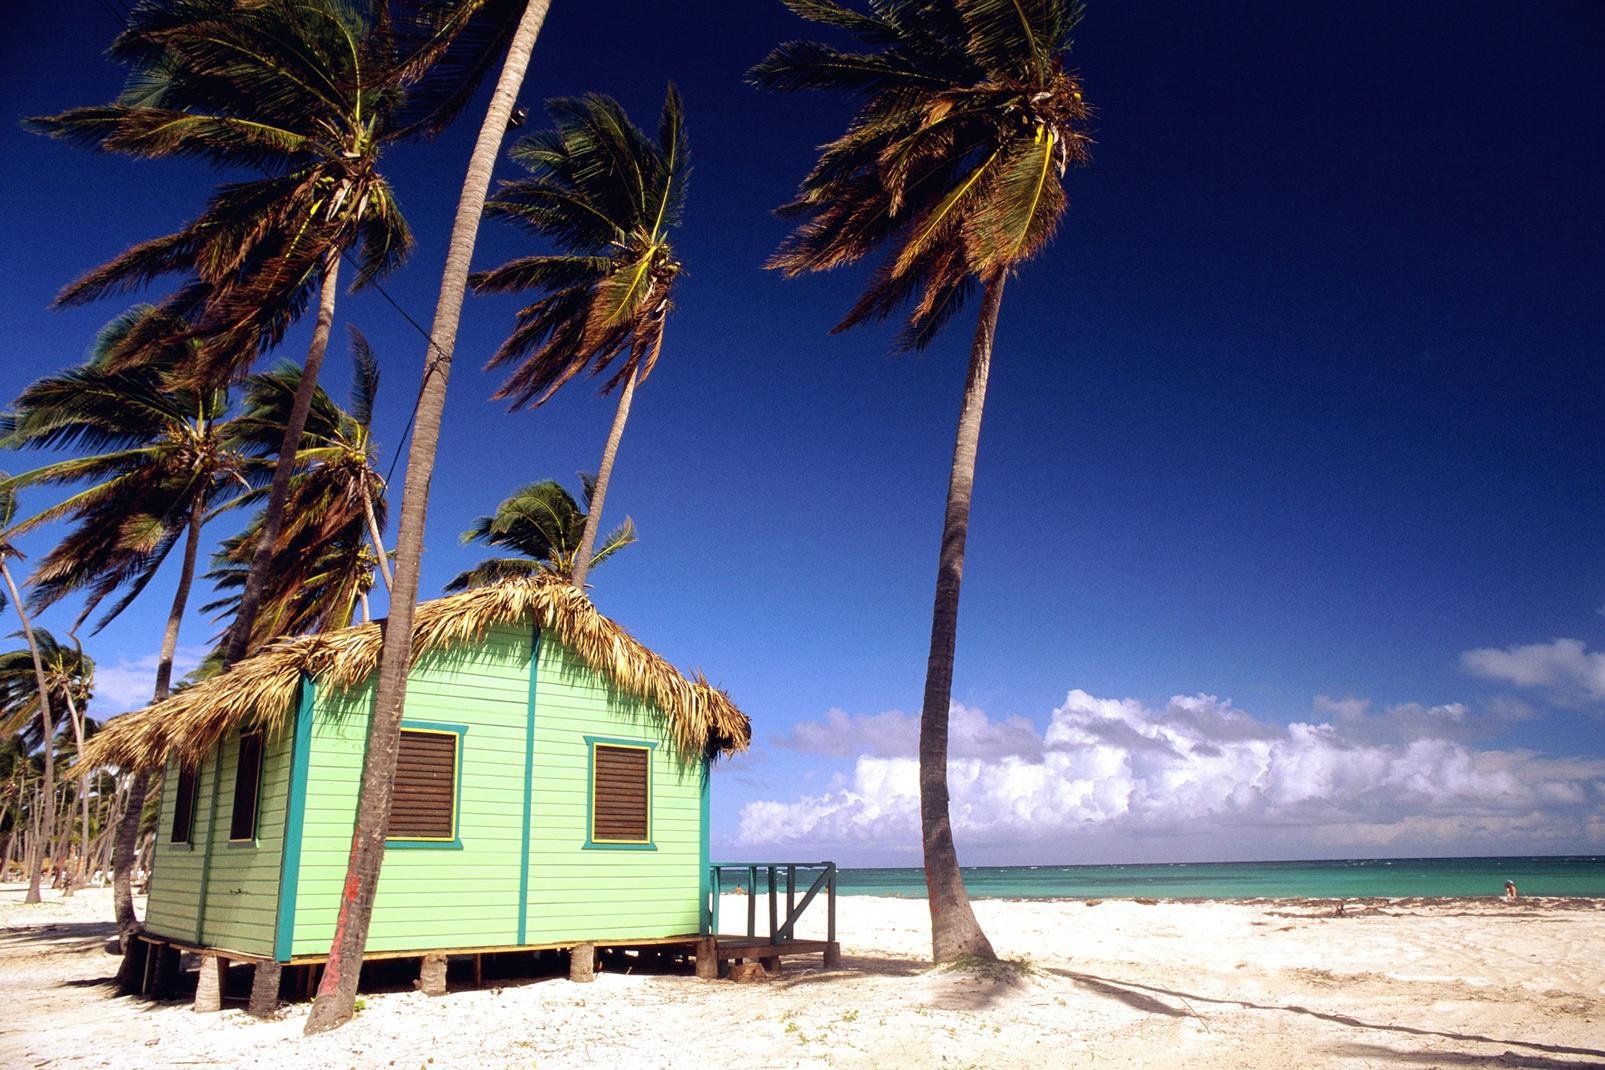 Zwischen der Karibik und Atlantik ist Punta Cana der bekannteste Badeort der Dominikanischen Republik. Und zwar aus gutem Grund... Diese wunderbaren Strände, die sich über mehr als 40 km erstrecken, könnten beinahe zum Weltnaturerbe erklärt werden. Das klare Wasser, Kokospalmen, weisser Sand... der magische Cocktail für einen ausgezeichneten Urlaub ist bereitet. Man liegt in der Sonne oder im Schatten ...